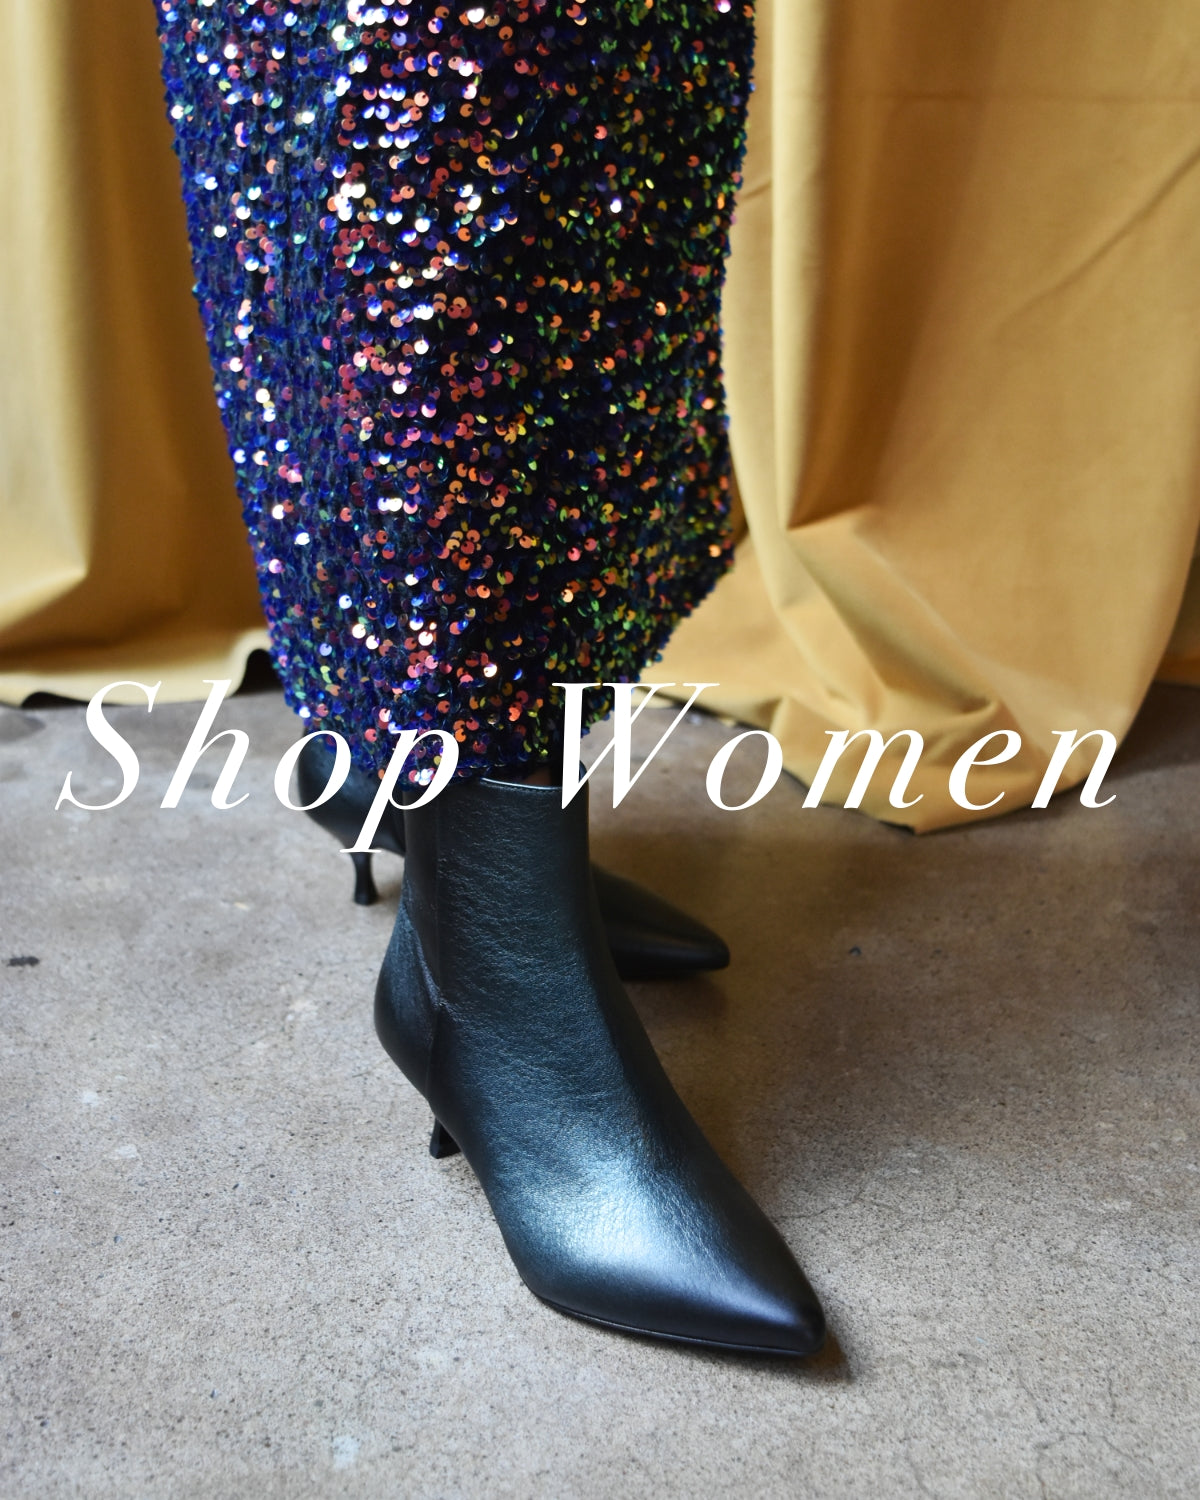 Shop Branded Men's and Women's Footwear